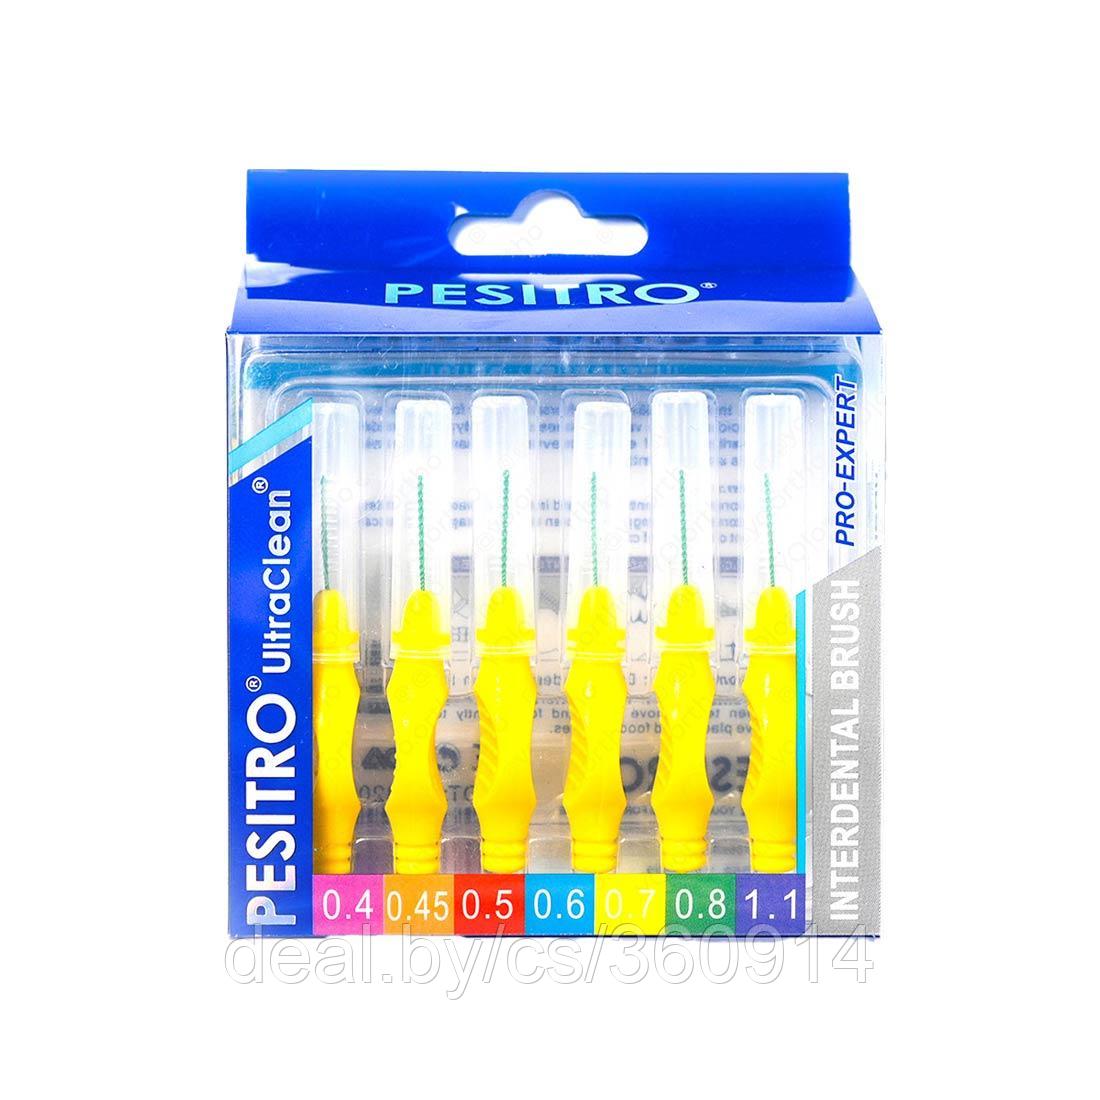 Pesitro Набор межзубных ершиков PESITRO Ortho Standart, толщина 0,7 мм, с прорезиненной ручкой